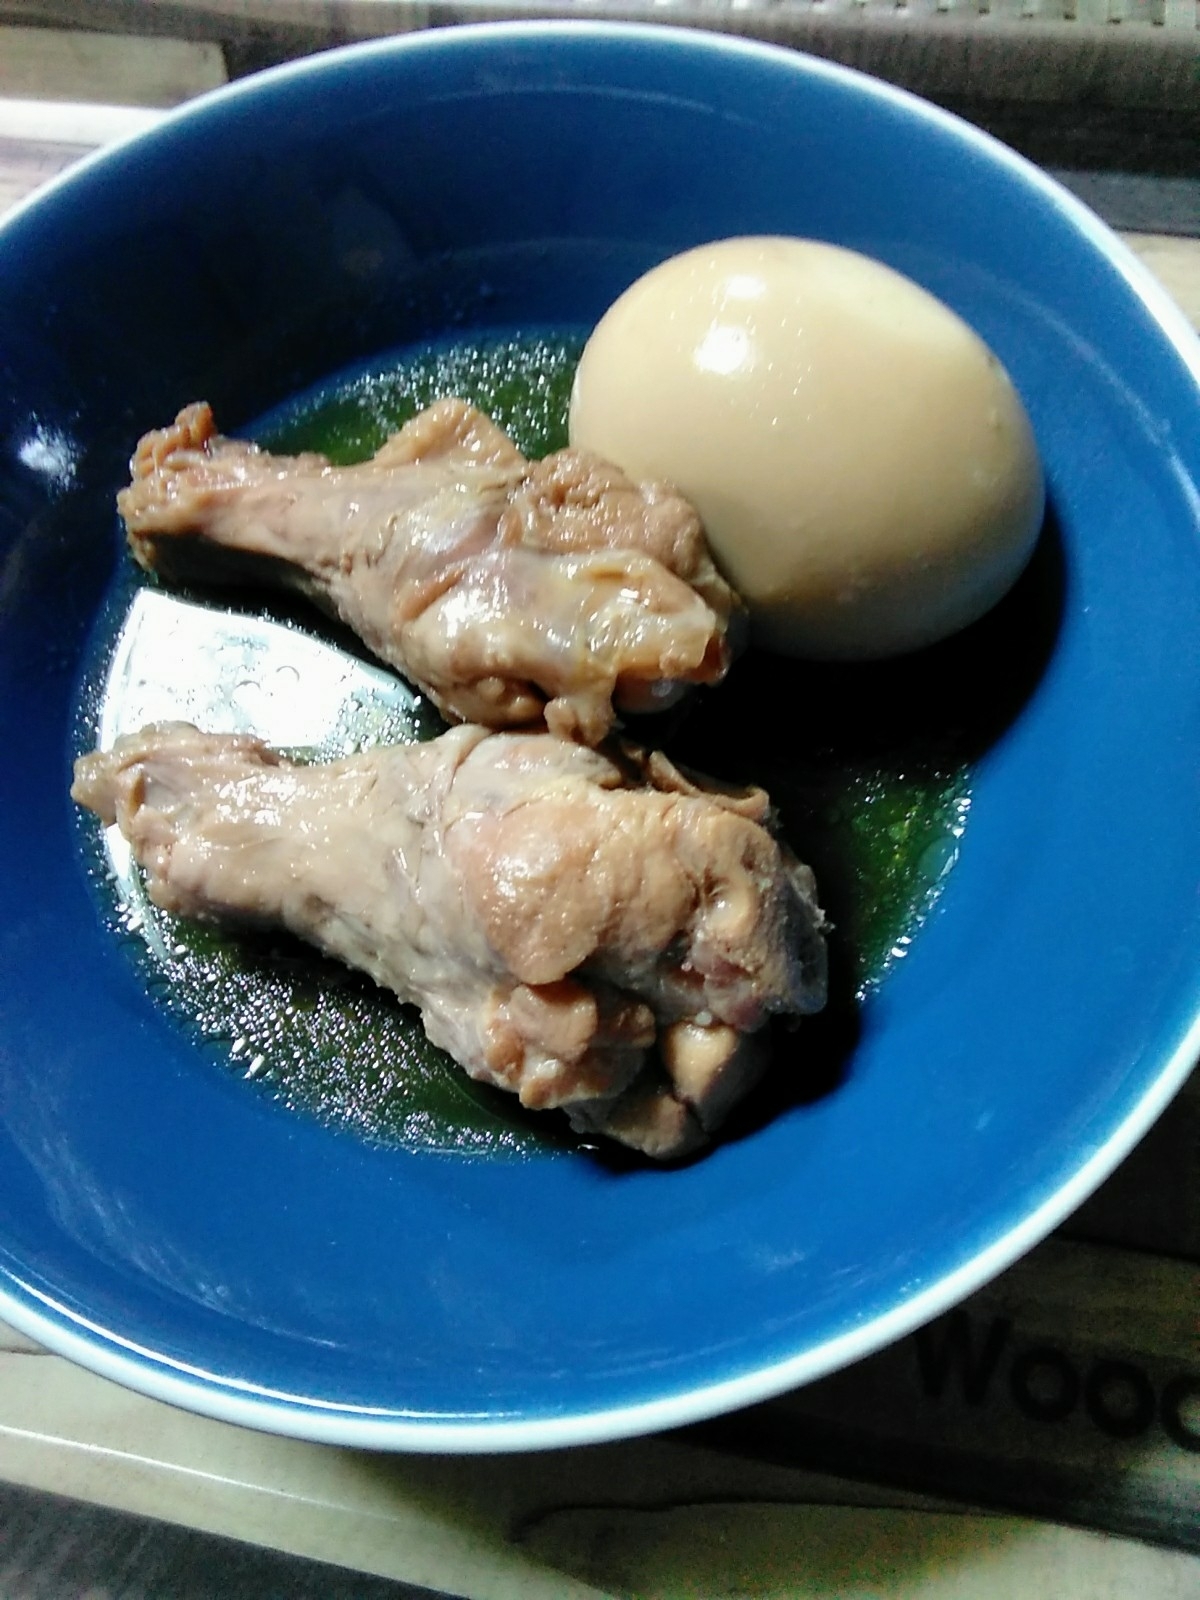 鶏の手羽元と卵の煮物